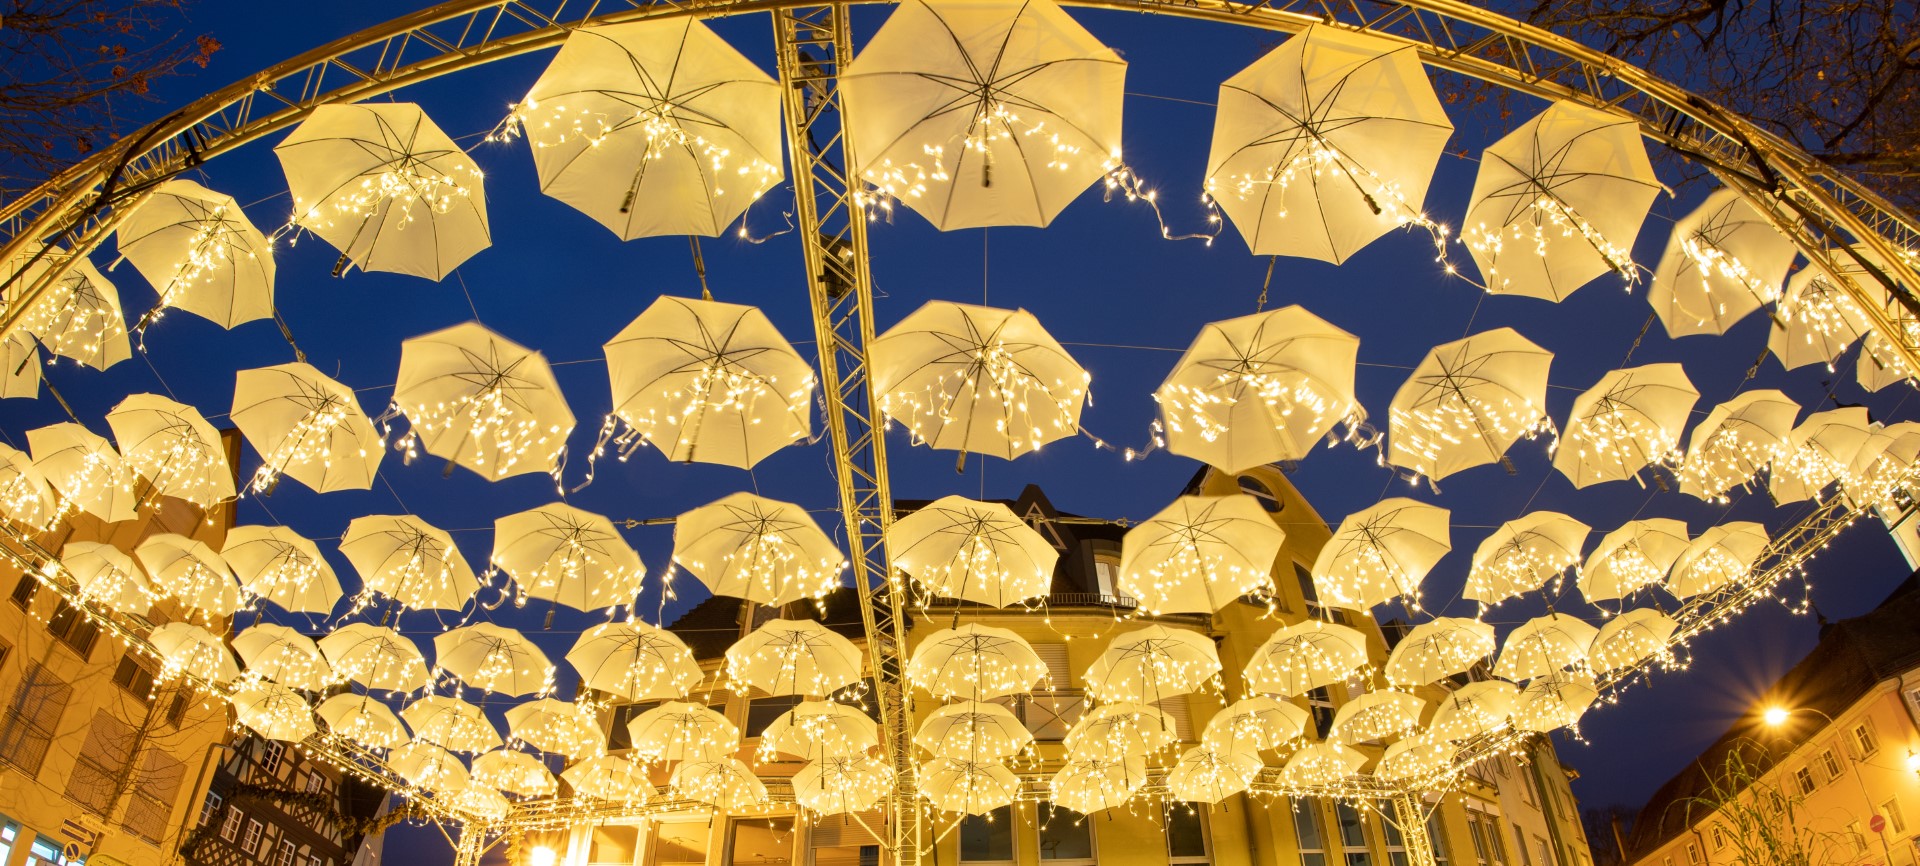 „Umbrella-Road“ mit 80 weißen Schirmen zu Weihnachten. Photo Credit: Jens Hackmann